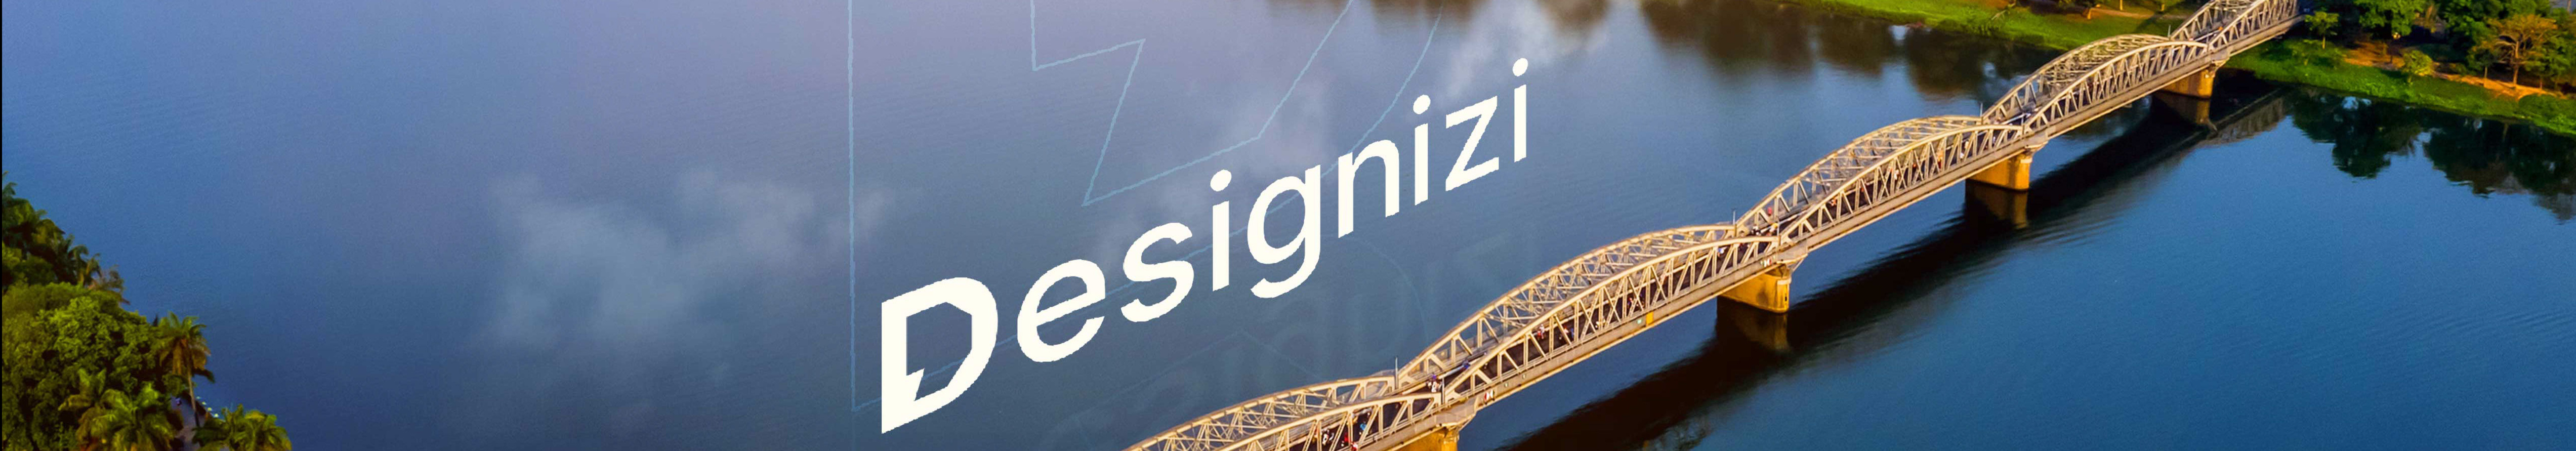 DesigniZi Creative Agency profil başlığı